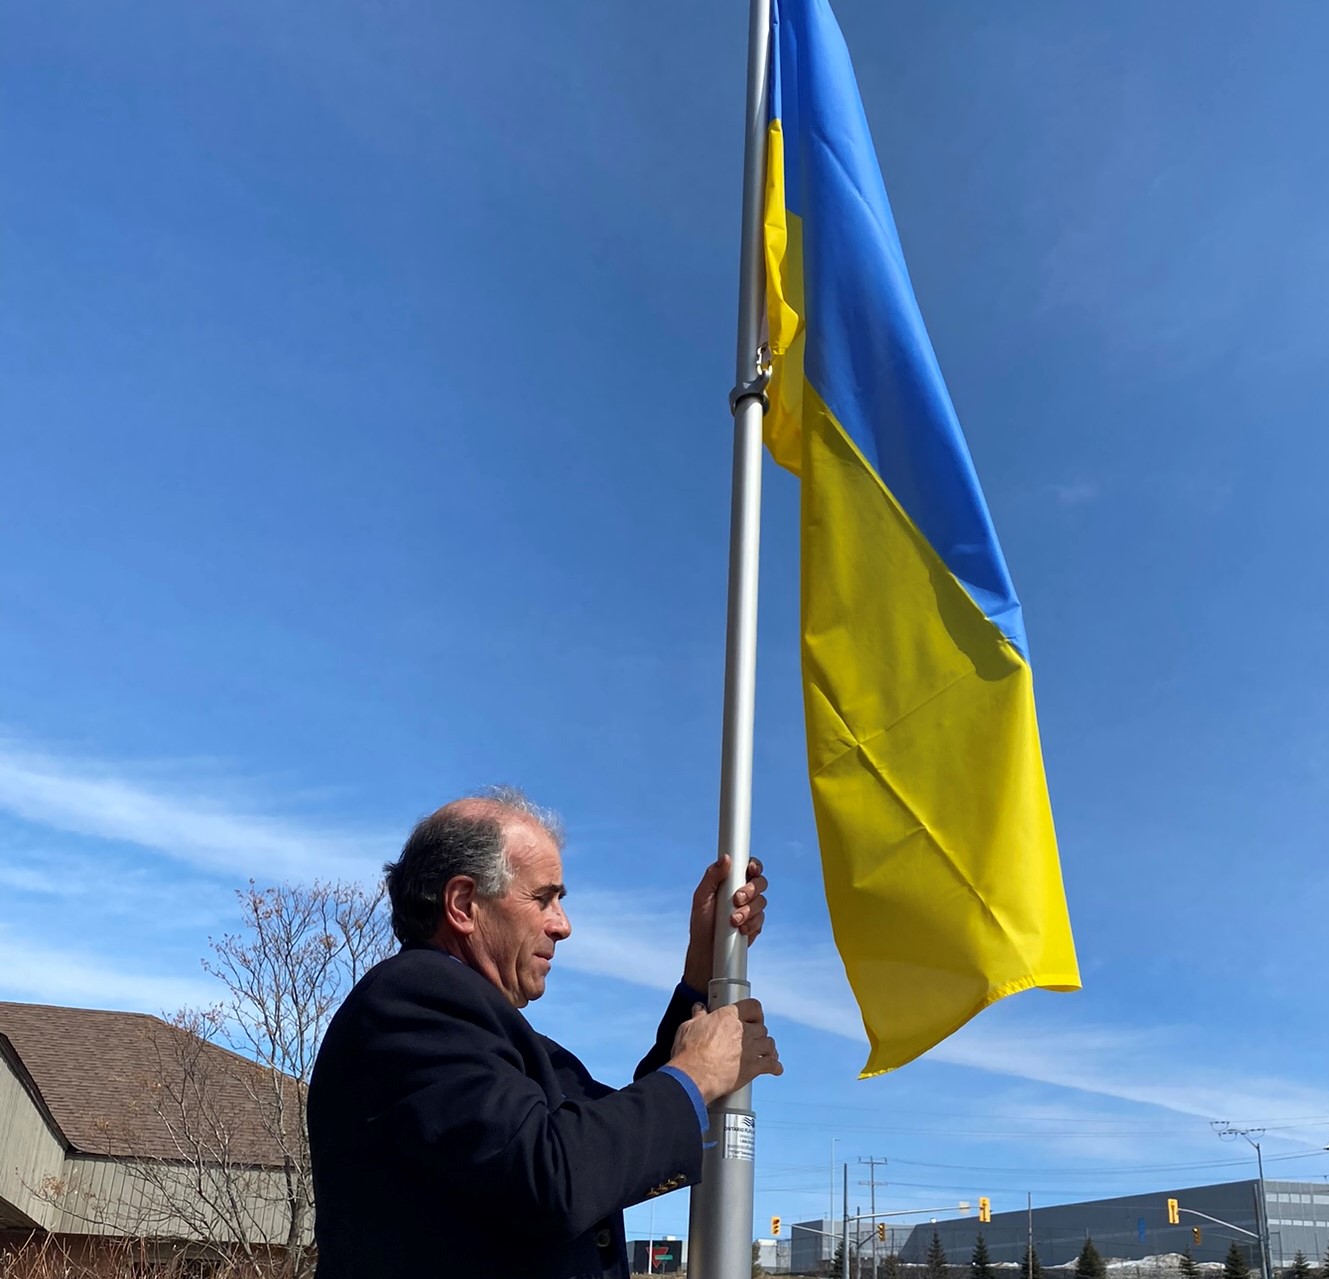 Mayor Burkett raising the Ukrainian flag at Severn's Administration Office